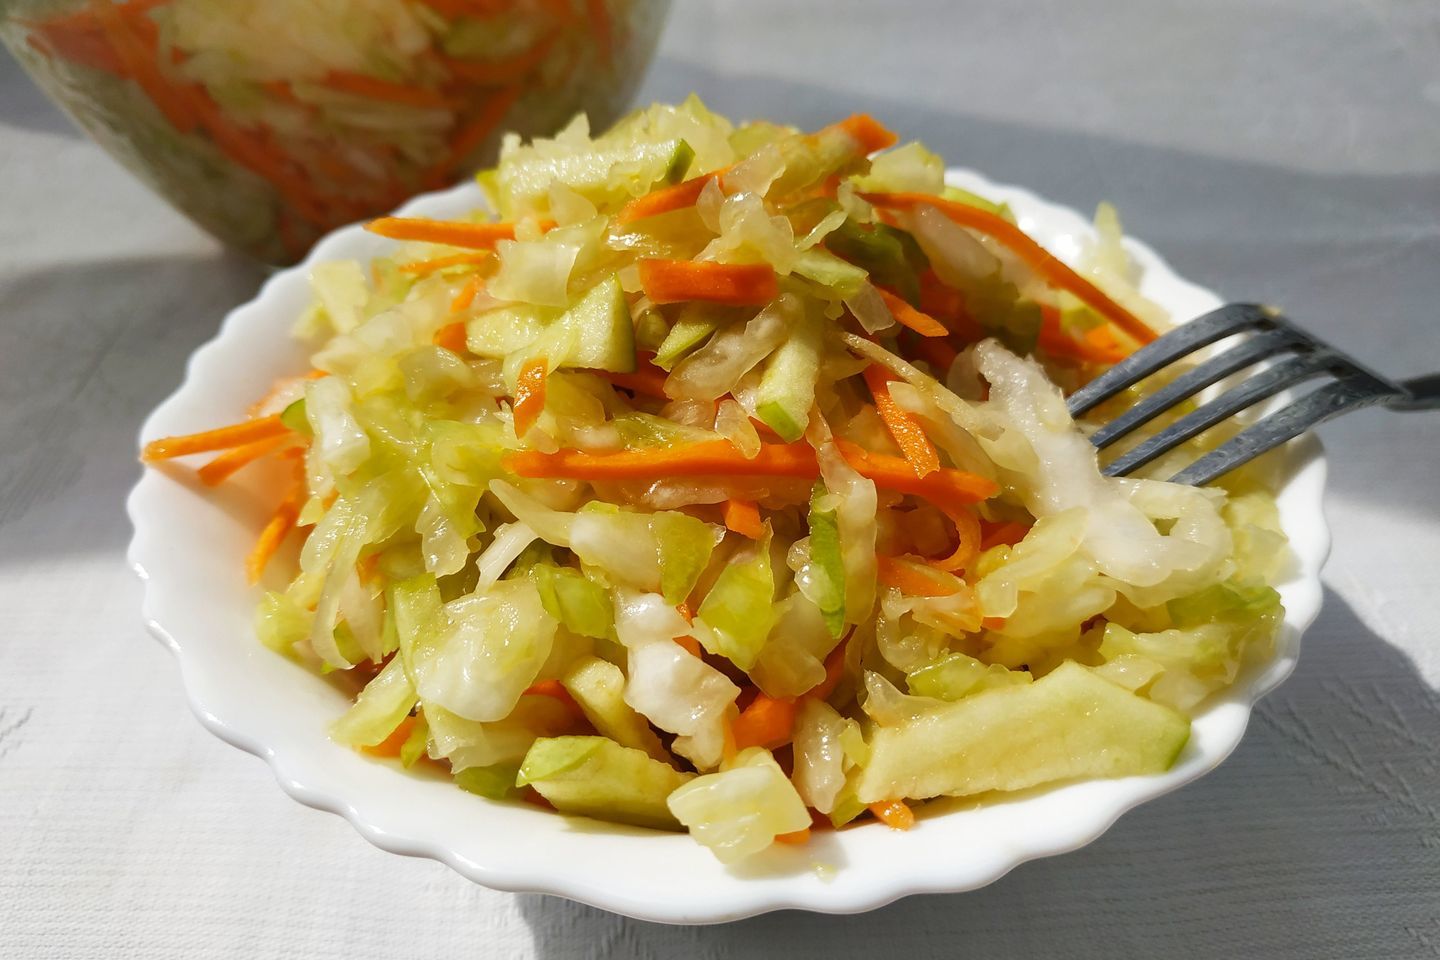 Салат из свежей капусты с яблоком и морковью